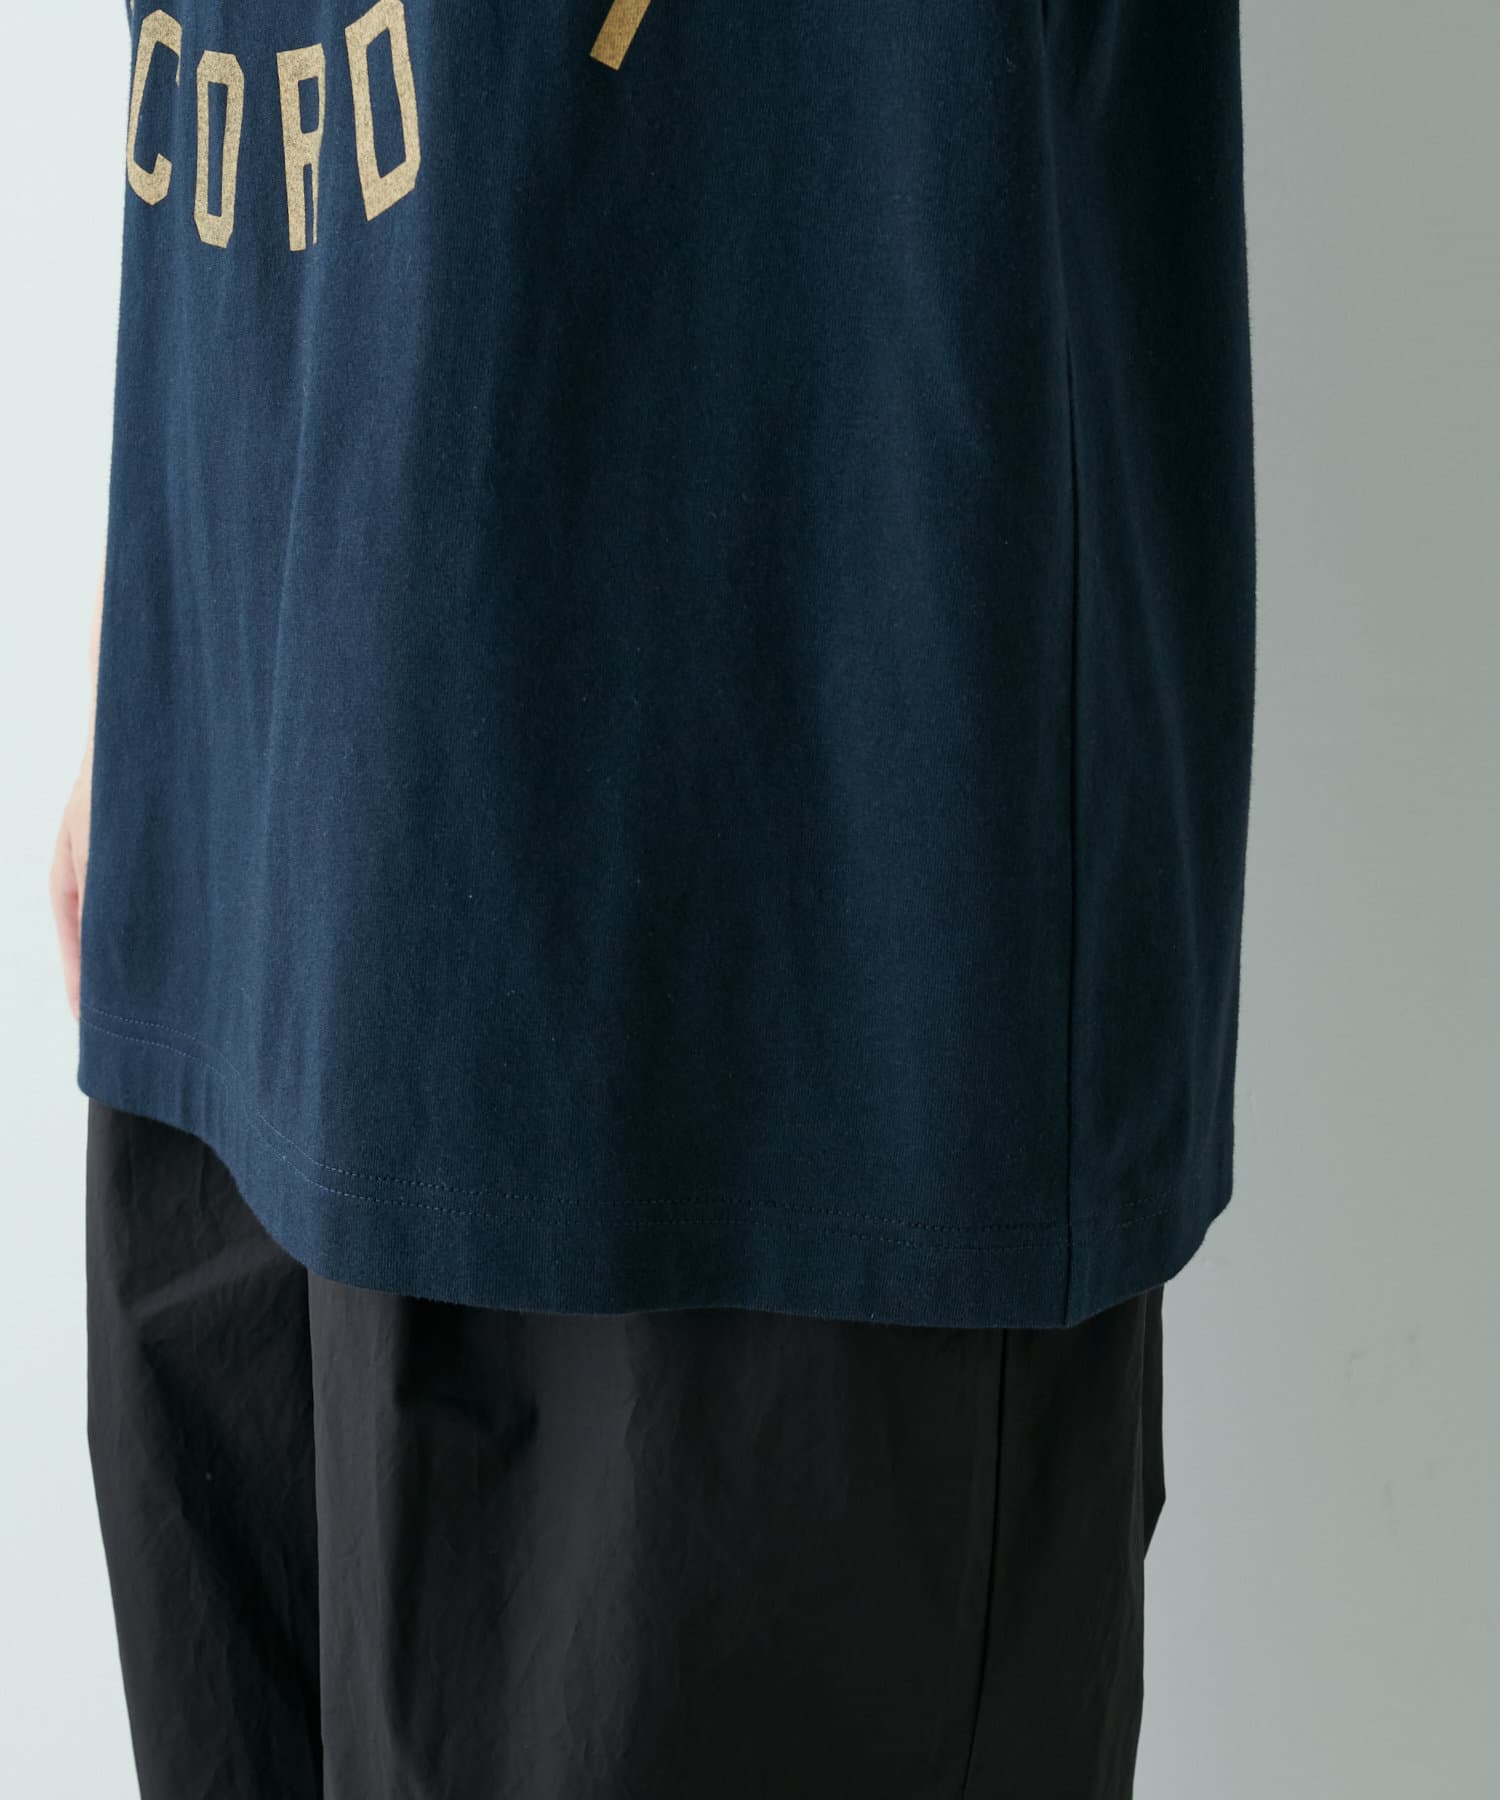 PUAL CE CIN(ピュアルセシン) リンガーカレッジロゴTシャツ